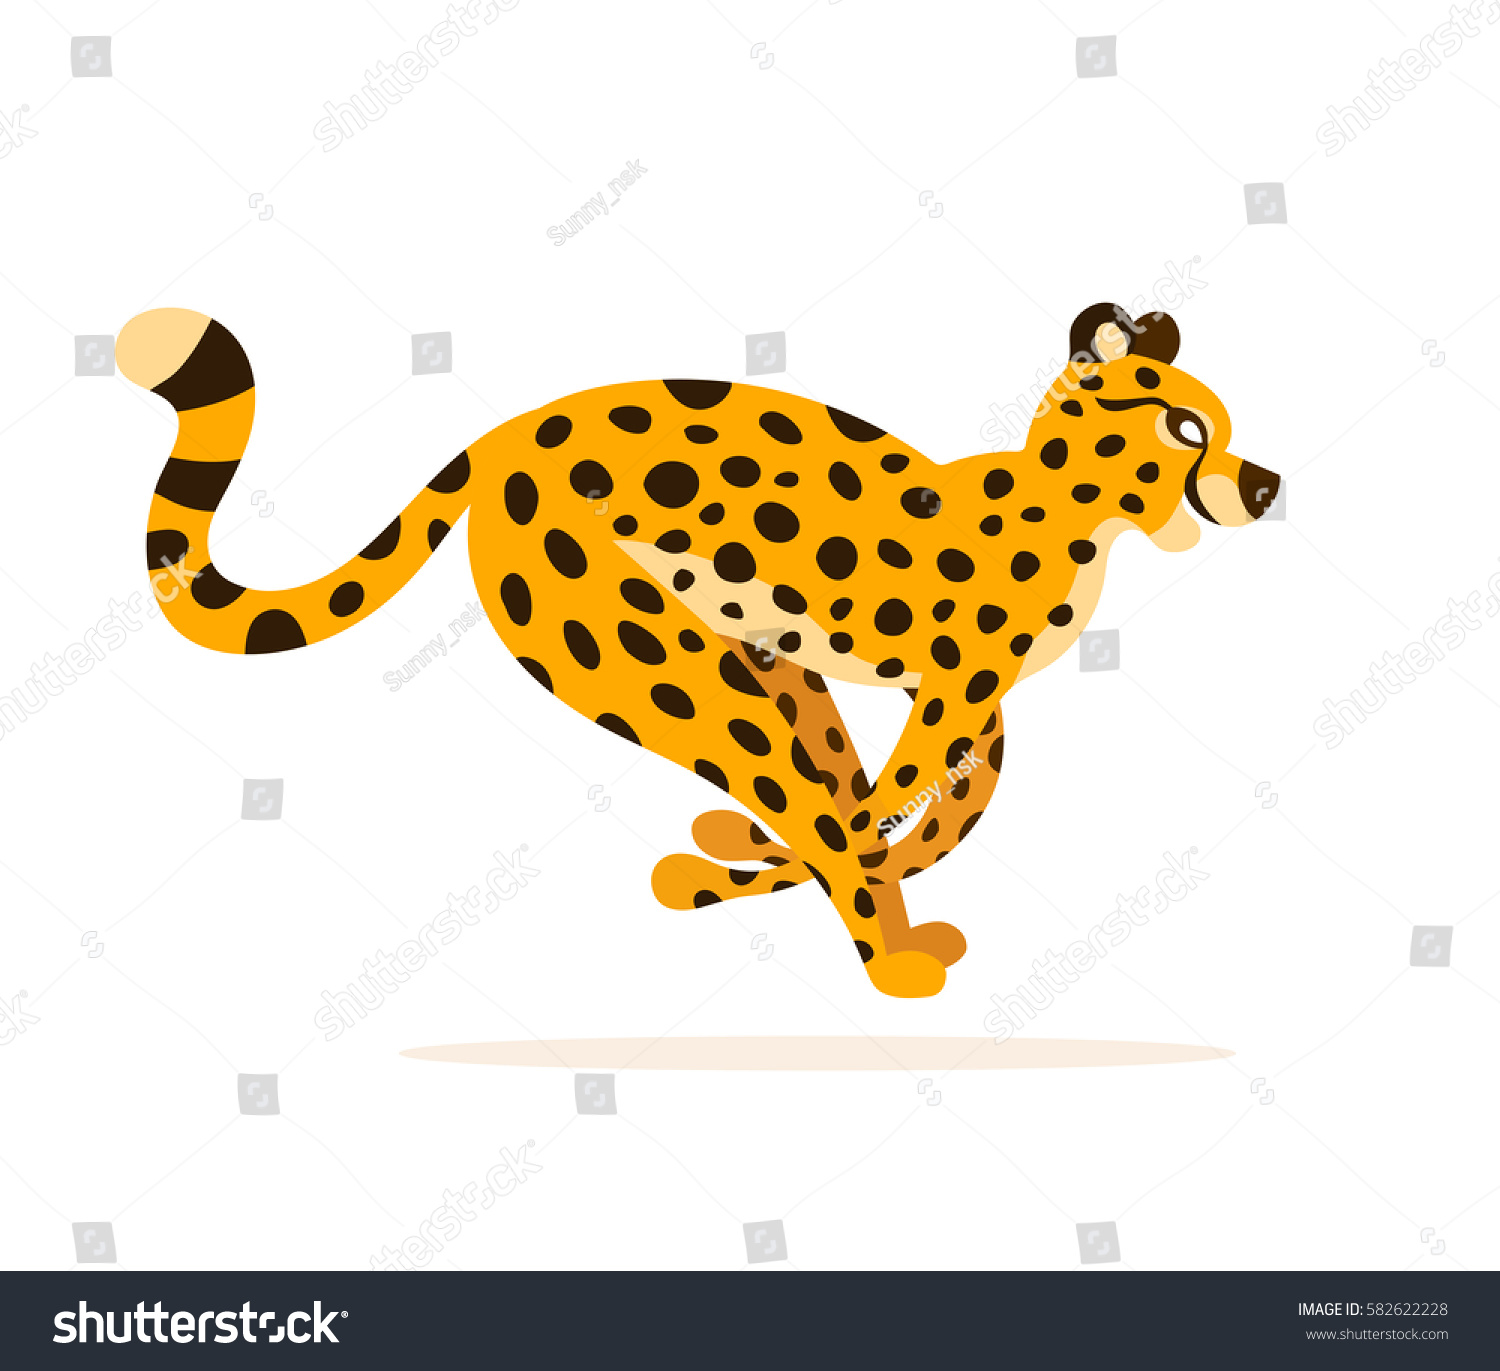 Vector Cheetah Illustration Running Animal Isolated Stock ...